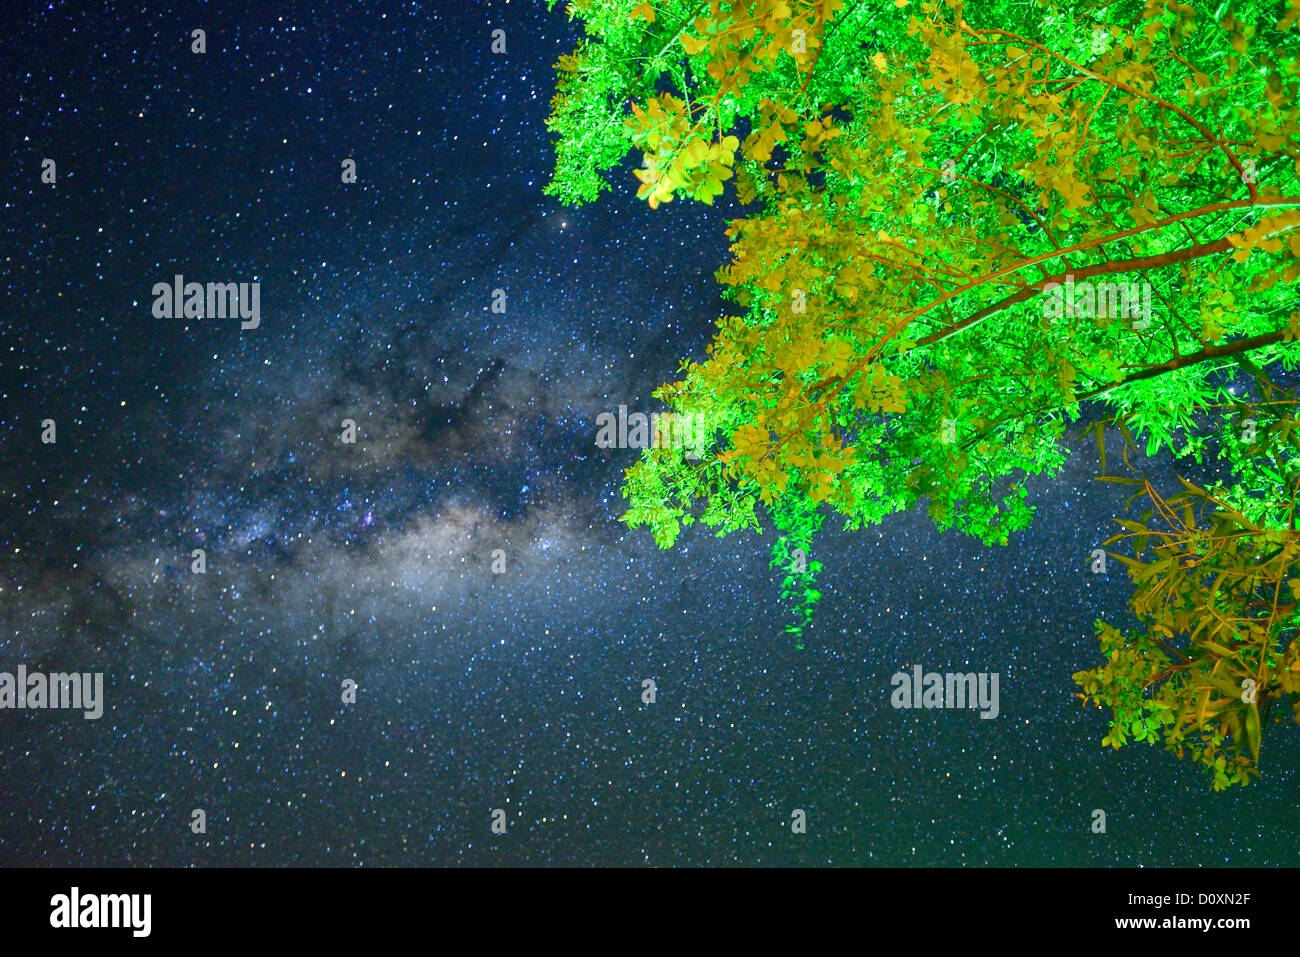 África, Namibiatree, hojas verdes, cielo nocturno, Astro Fotografía, cielo, estrellas, iluminado por las estrellas, penetró el cielo, Caprivi, Foto de stock